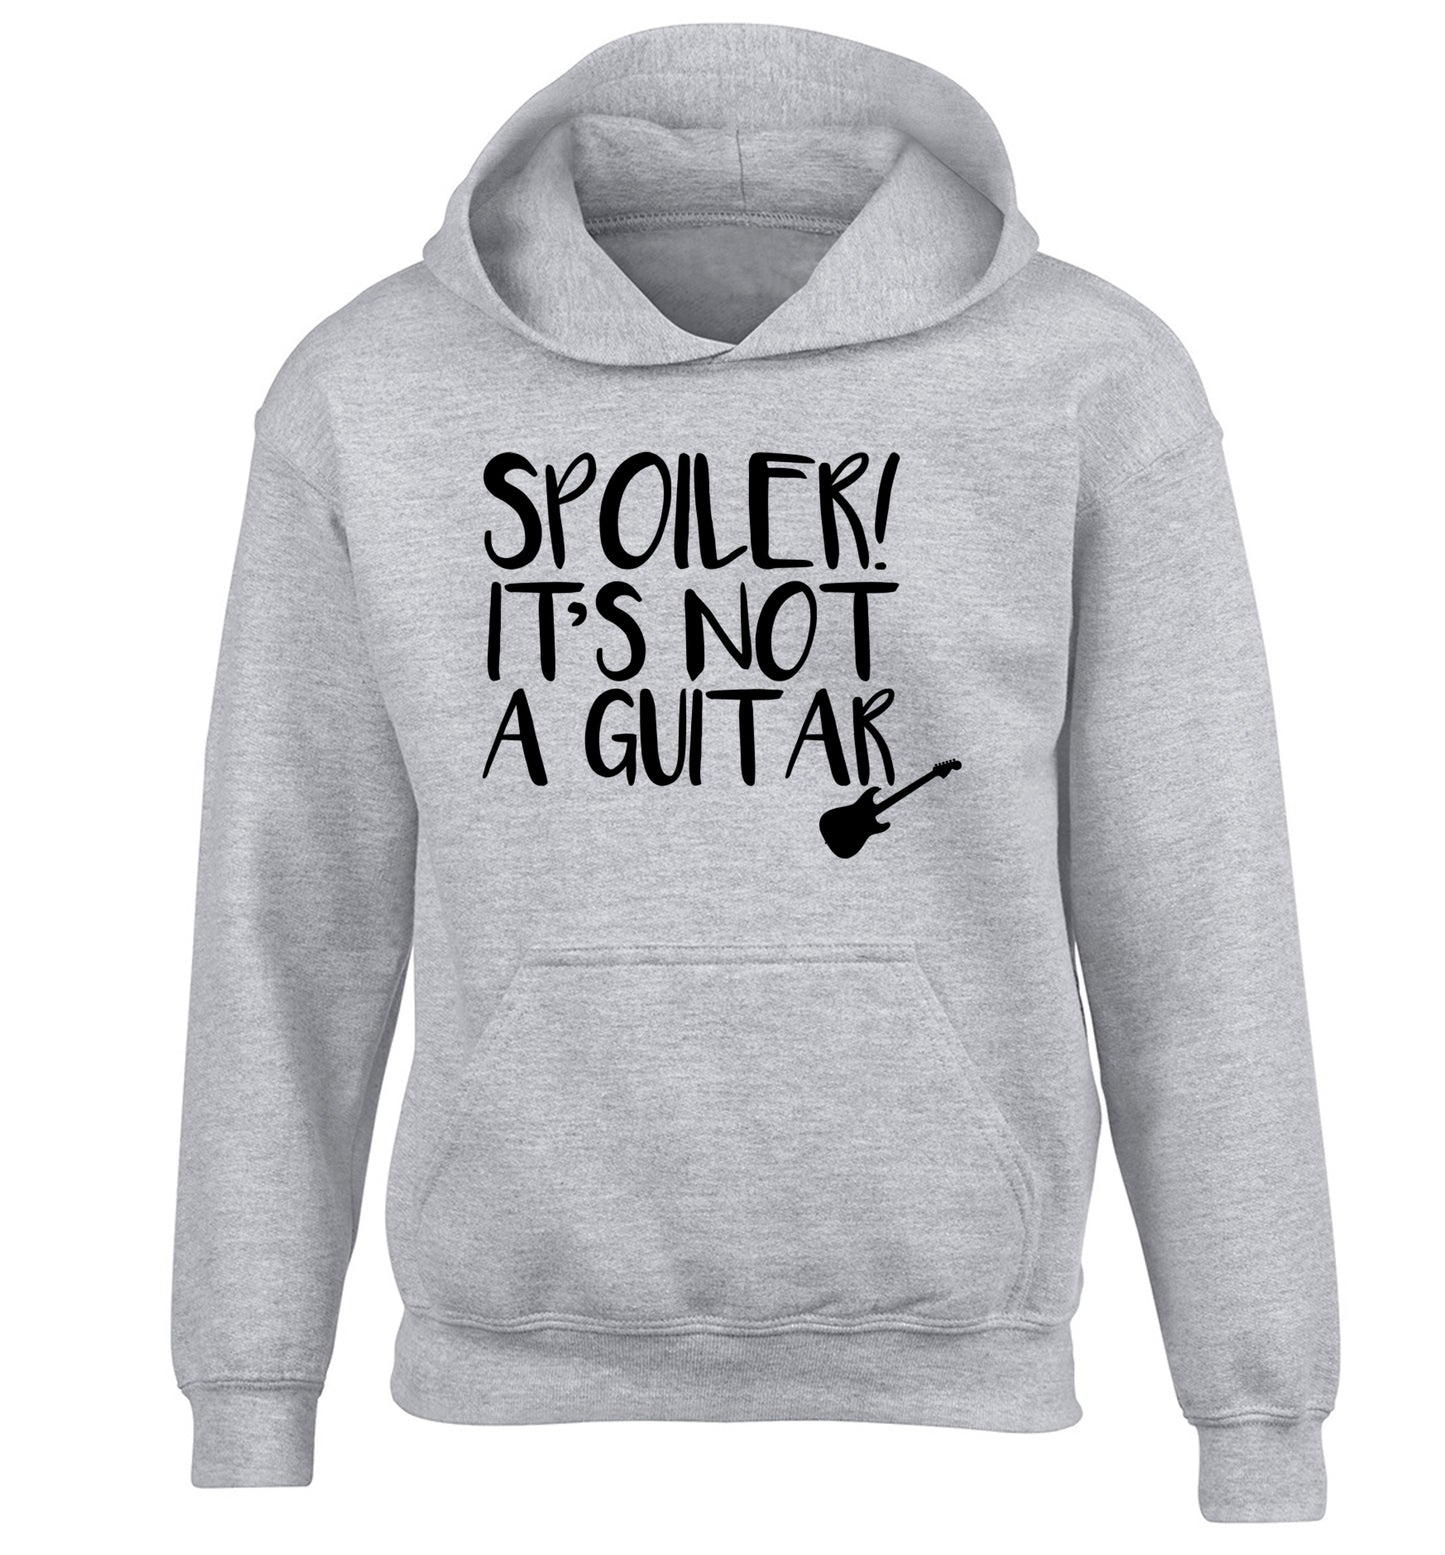 Spoiler it's not a guitar children's grey hoodie 12-13 Years